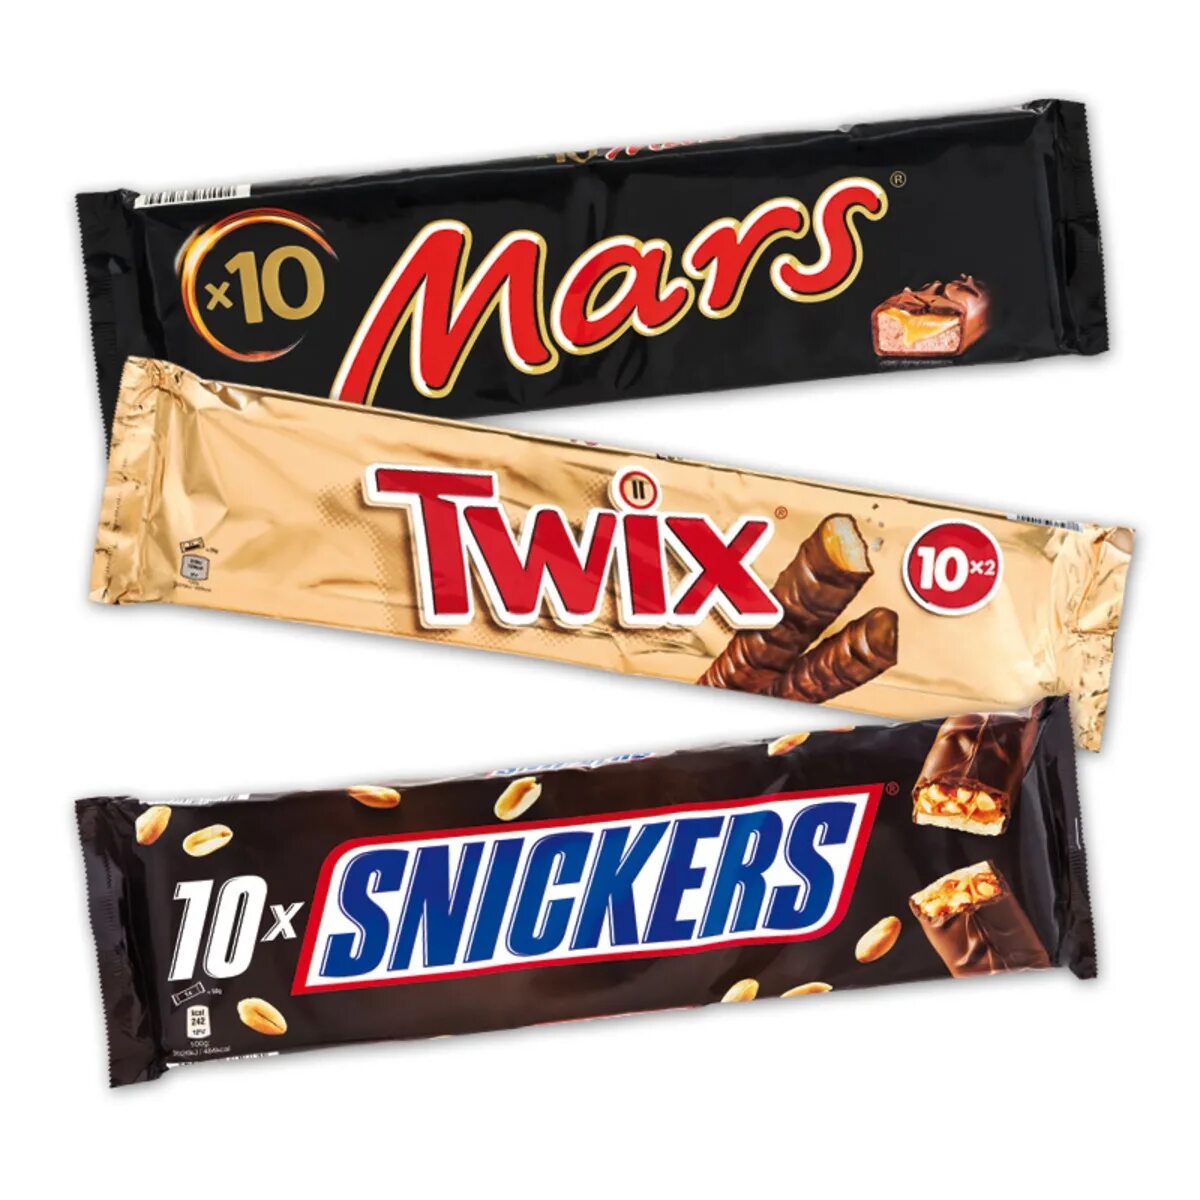 Купить сникерс оптом. Шоколадные батончики Сникерс Марс Твикс Баунти. Батончики Сникерс Марс Баунти. Шоколад Марс Твикс Баунти. Шоколадки сниккр март Твикс.